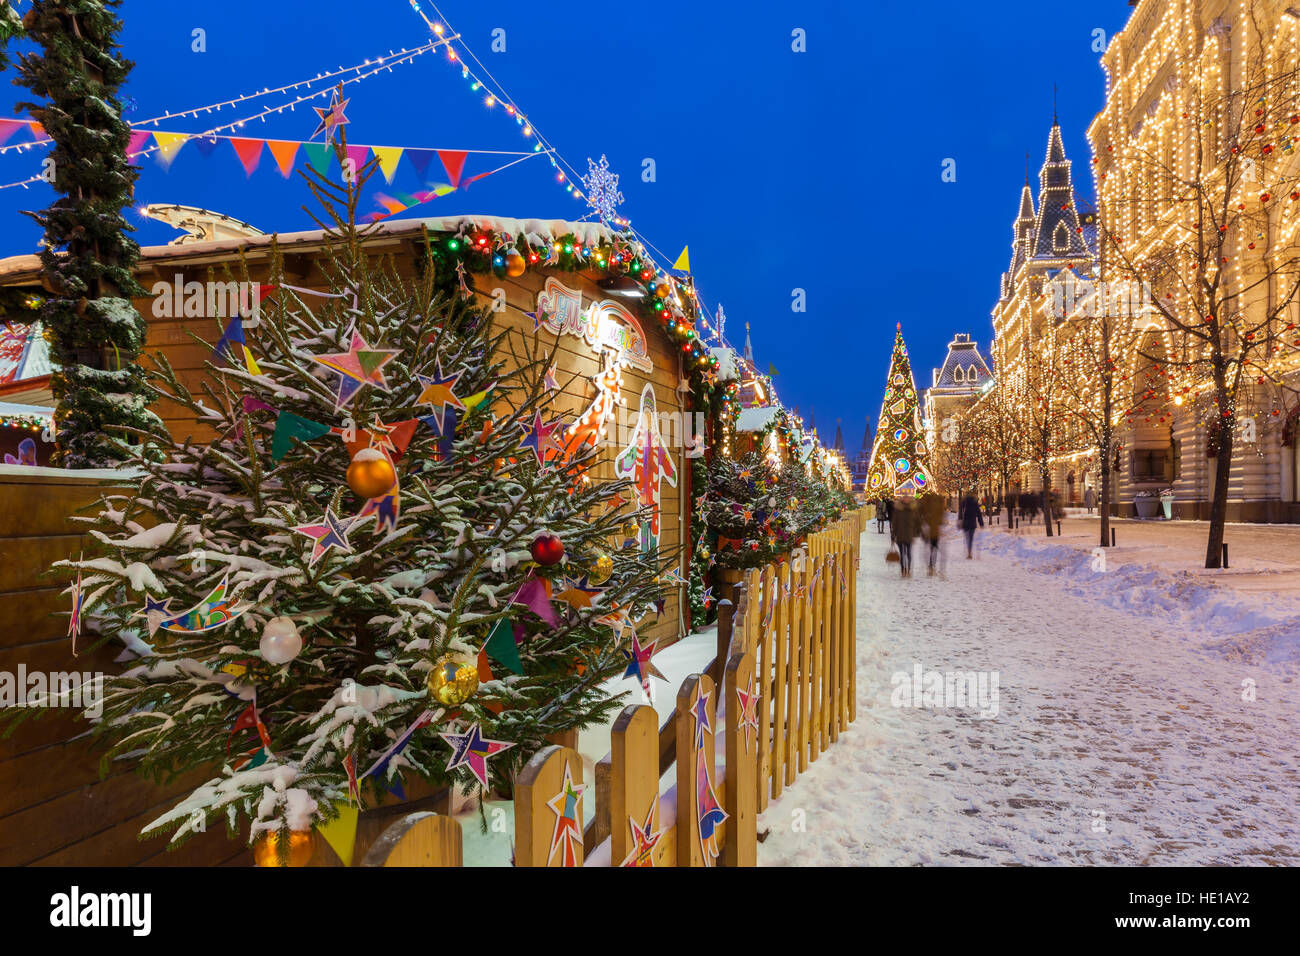 Moskau, Russland - 8. Dezember 2016: Dämmerung Blick auf den Weihnachtsbaum und Weihnachten Markt auf dem Roten Platz am Dezember 08,2016 in Moskau, Russland Stockfoto